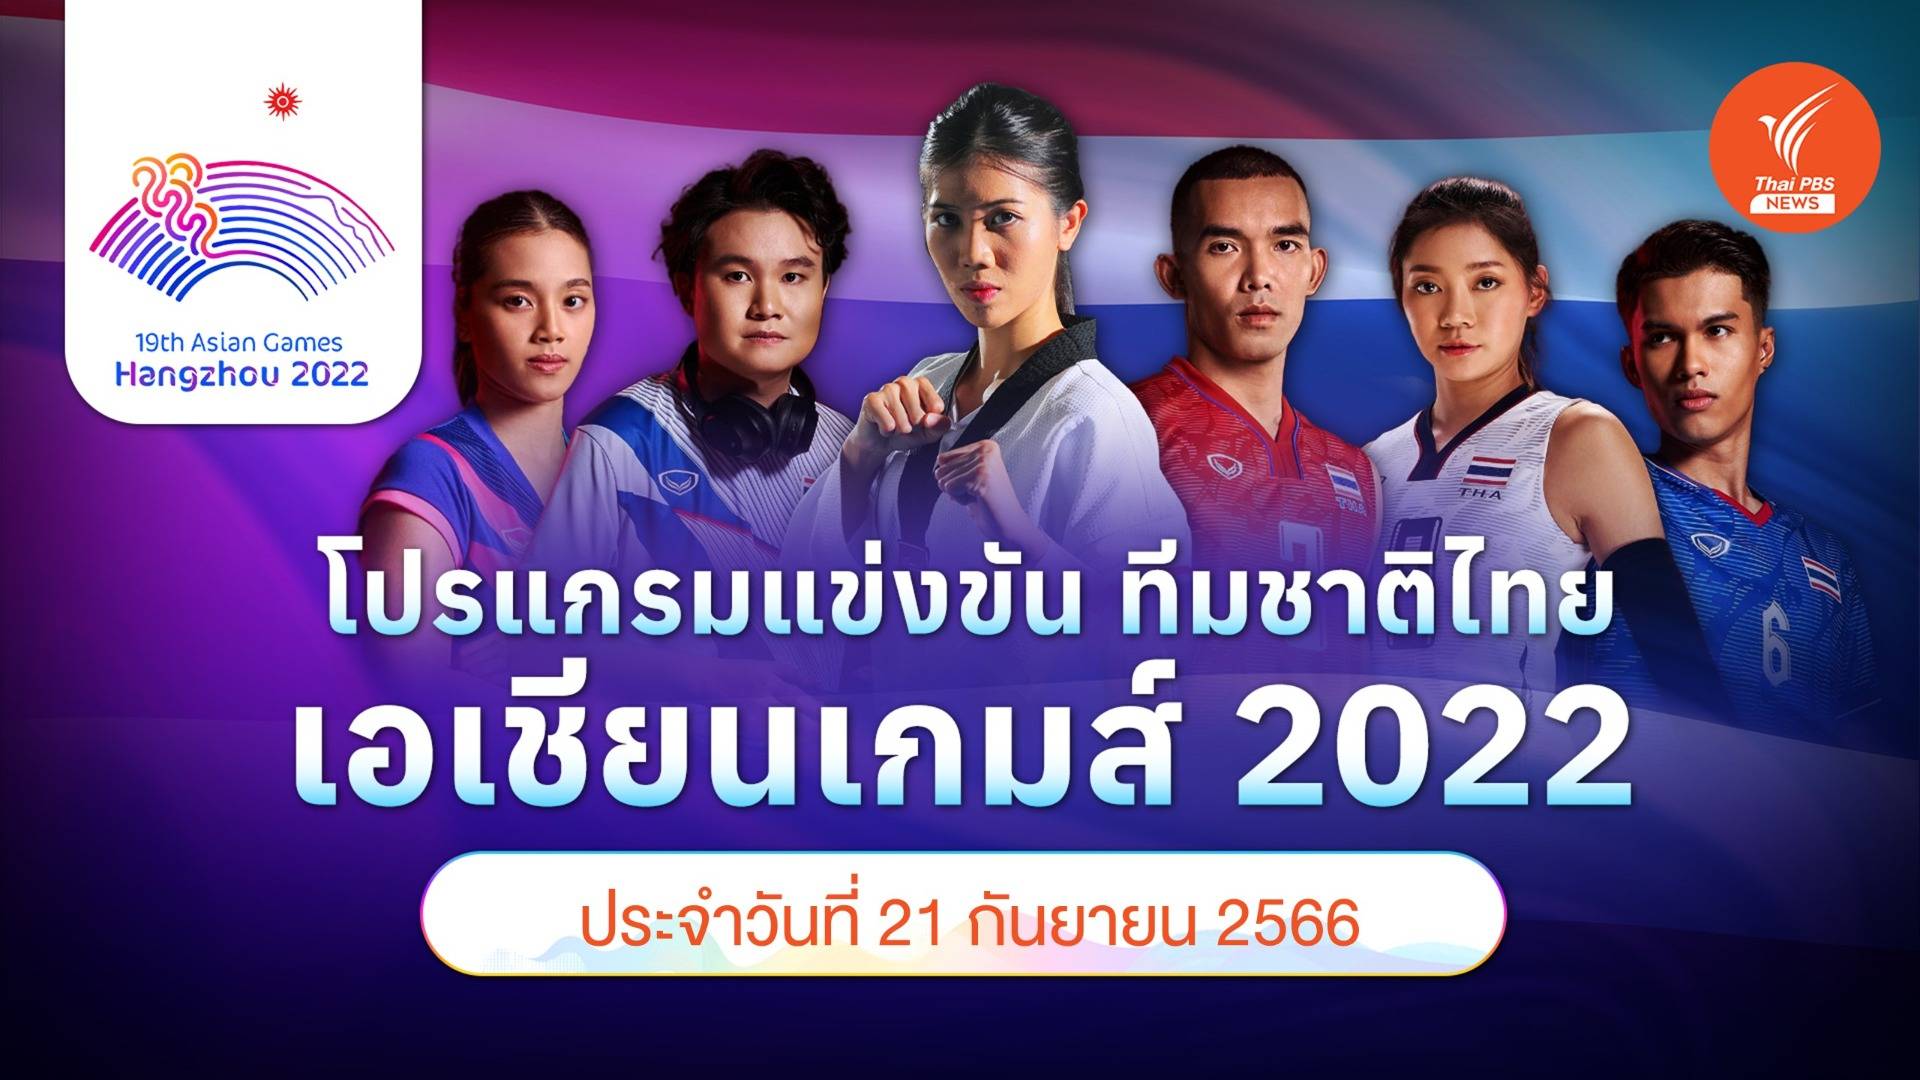 โปรแกรมการแข่งขัน เอเชียนเกมส์ 2022 ทัพนักกีฬาไทย วันที่ 21 ก.ย.66  